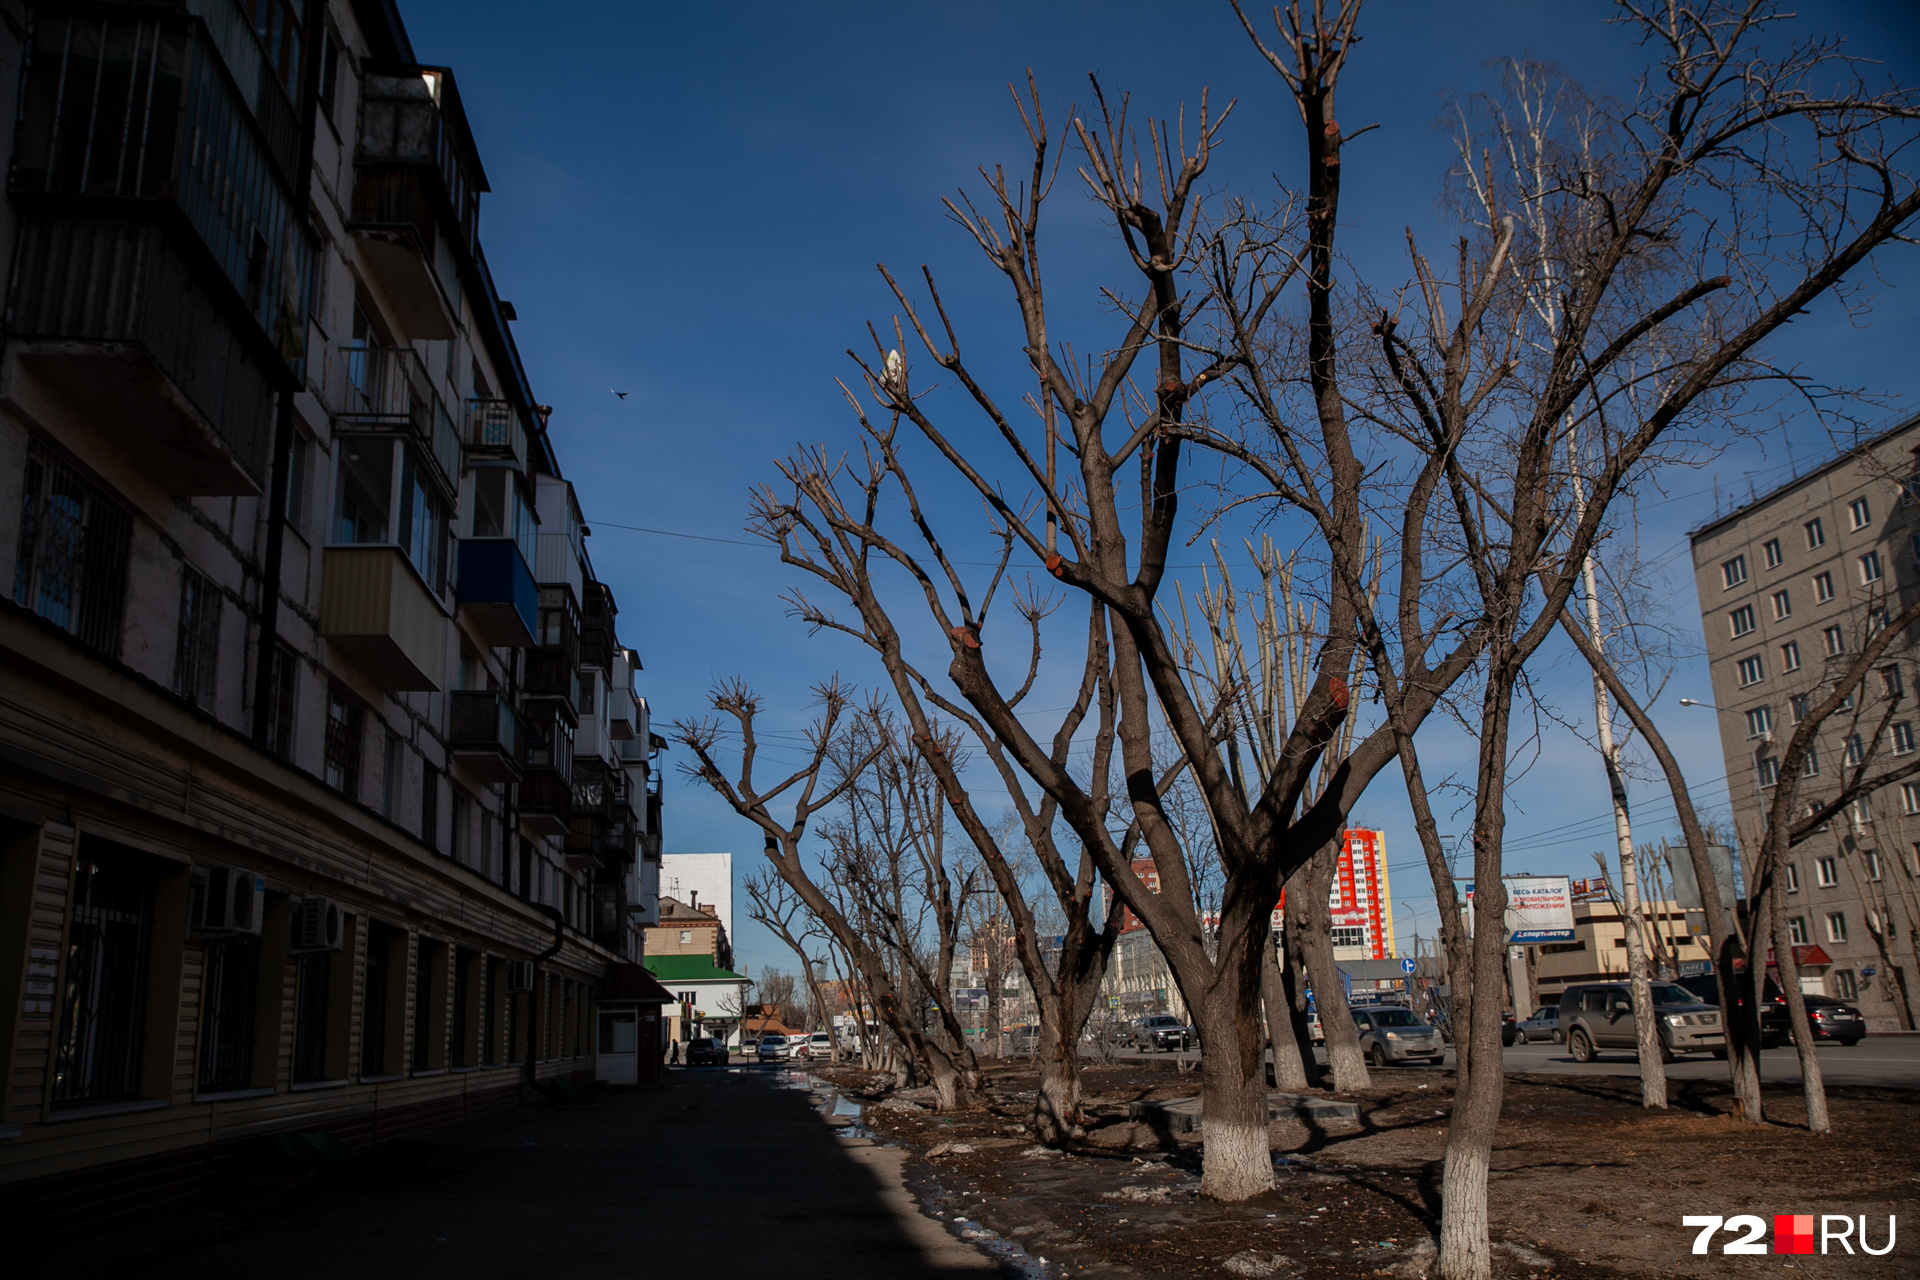 По словам Андрея Николаева, на этом фото обрезка деревьев сделана с сохранением большого количества веток. Дерево не превратили в пенек